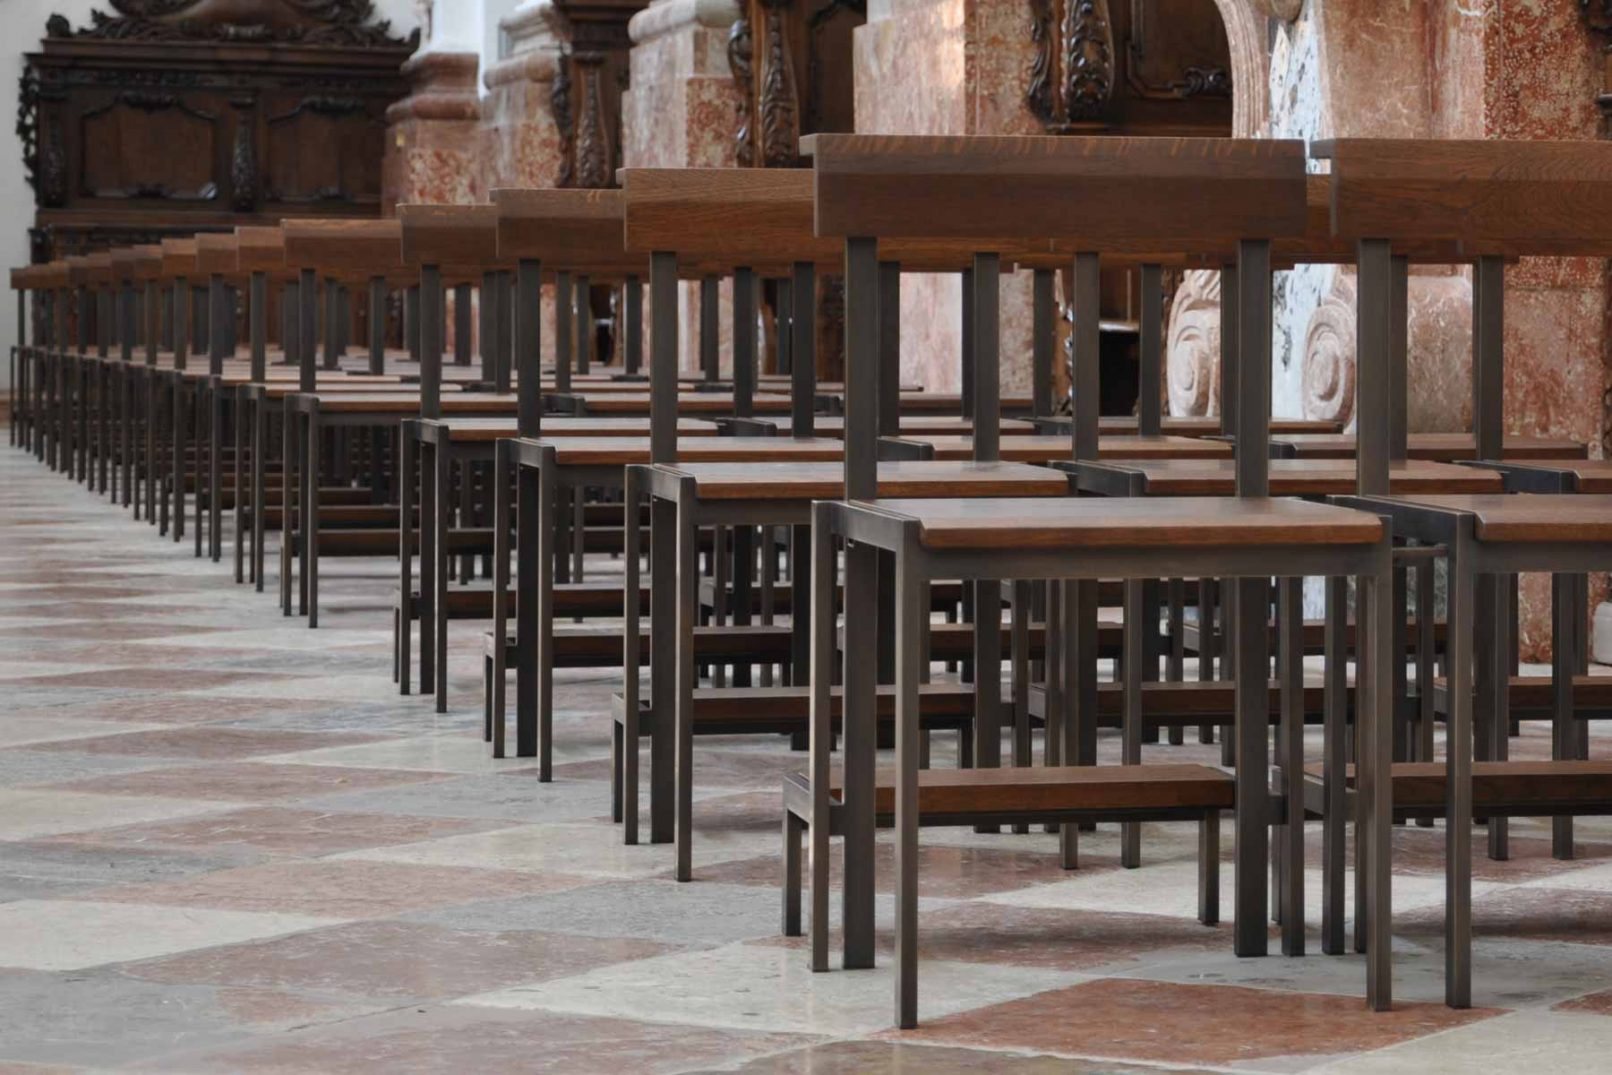 Kirchenbestuhlung aus Bronze und Eichenholz - Ansicht der Stuhlreihen